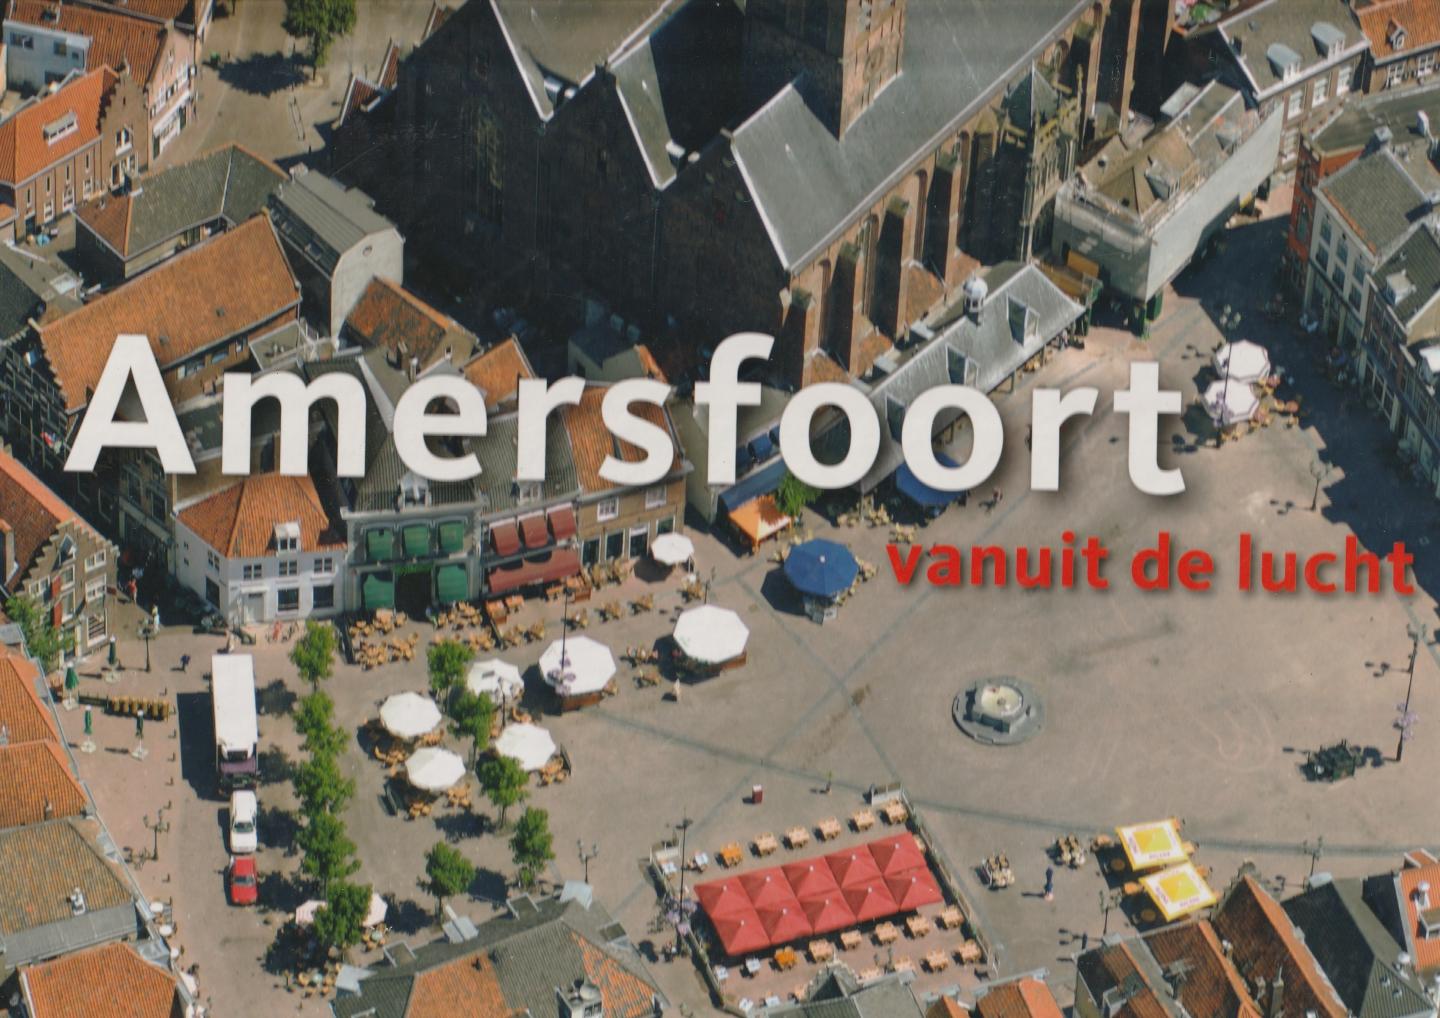  - Amersfoort vanuit de lucht / foto's: Hans Brons en Paul Deelman, tekst: Cor van den Braber en Burchard Elias